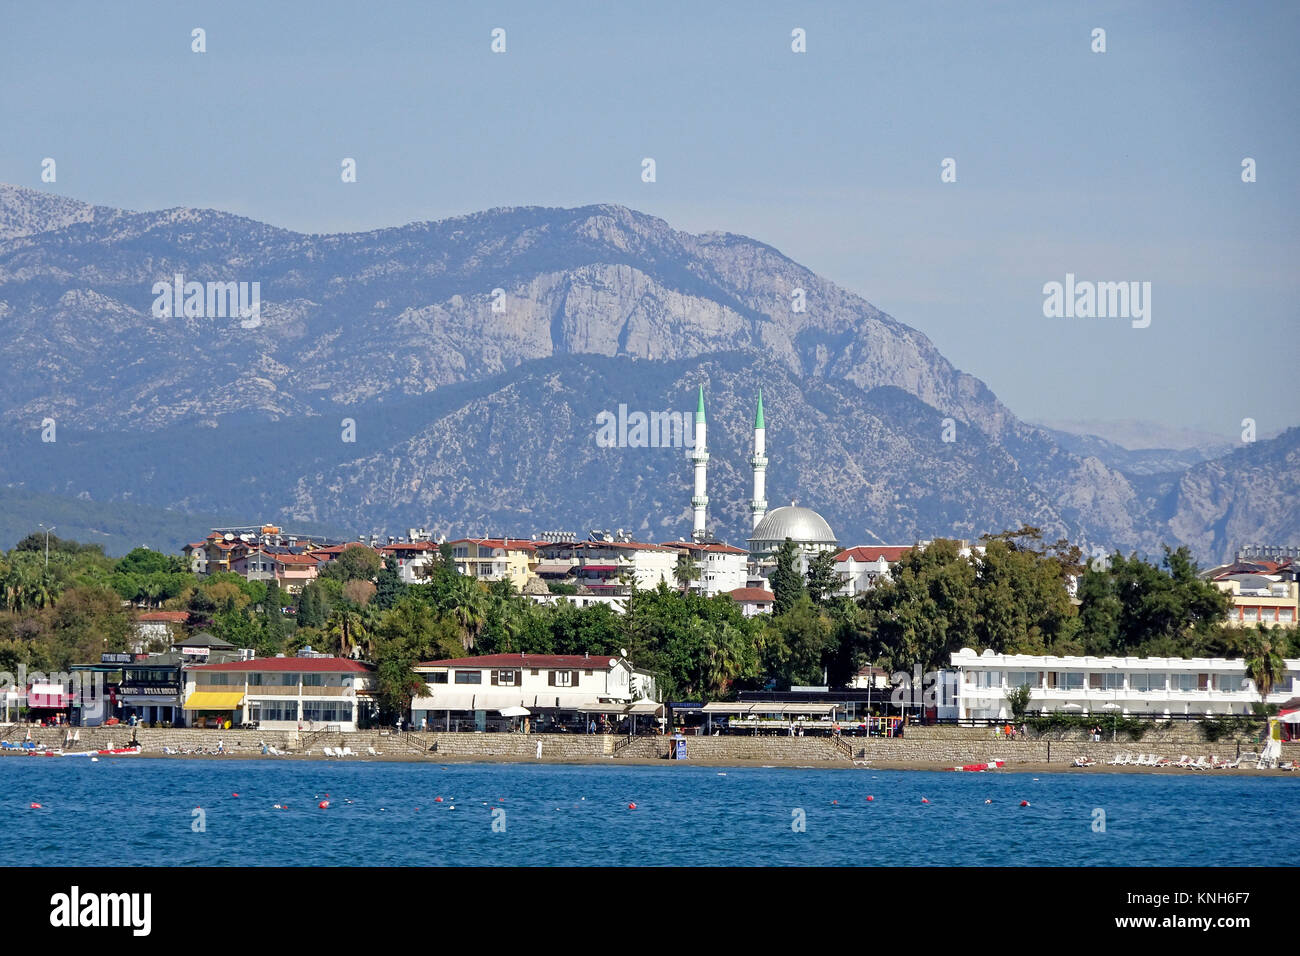 Spiaggia e alberghi, dietro la Moschea Fatith e sui monti Taurus, laterale riviera turca, Turchia Foto Stock